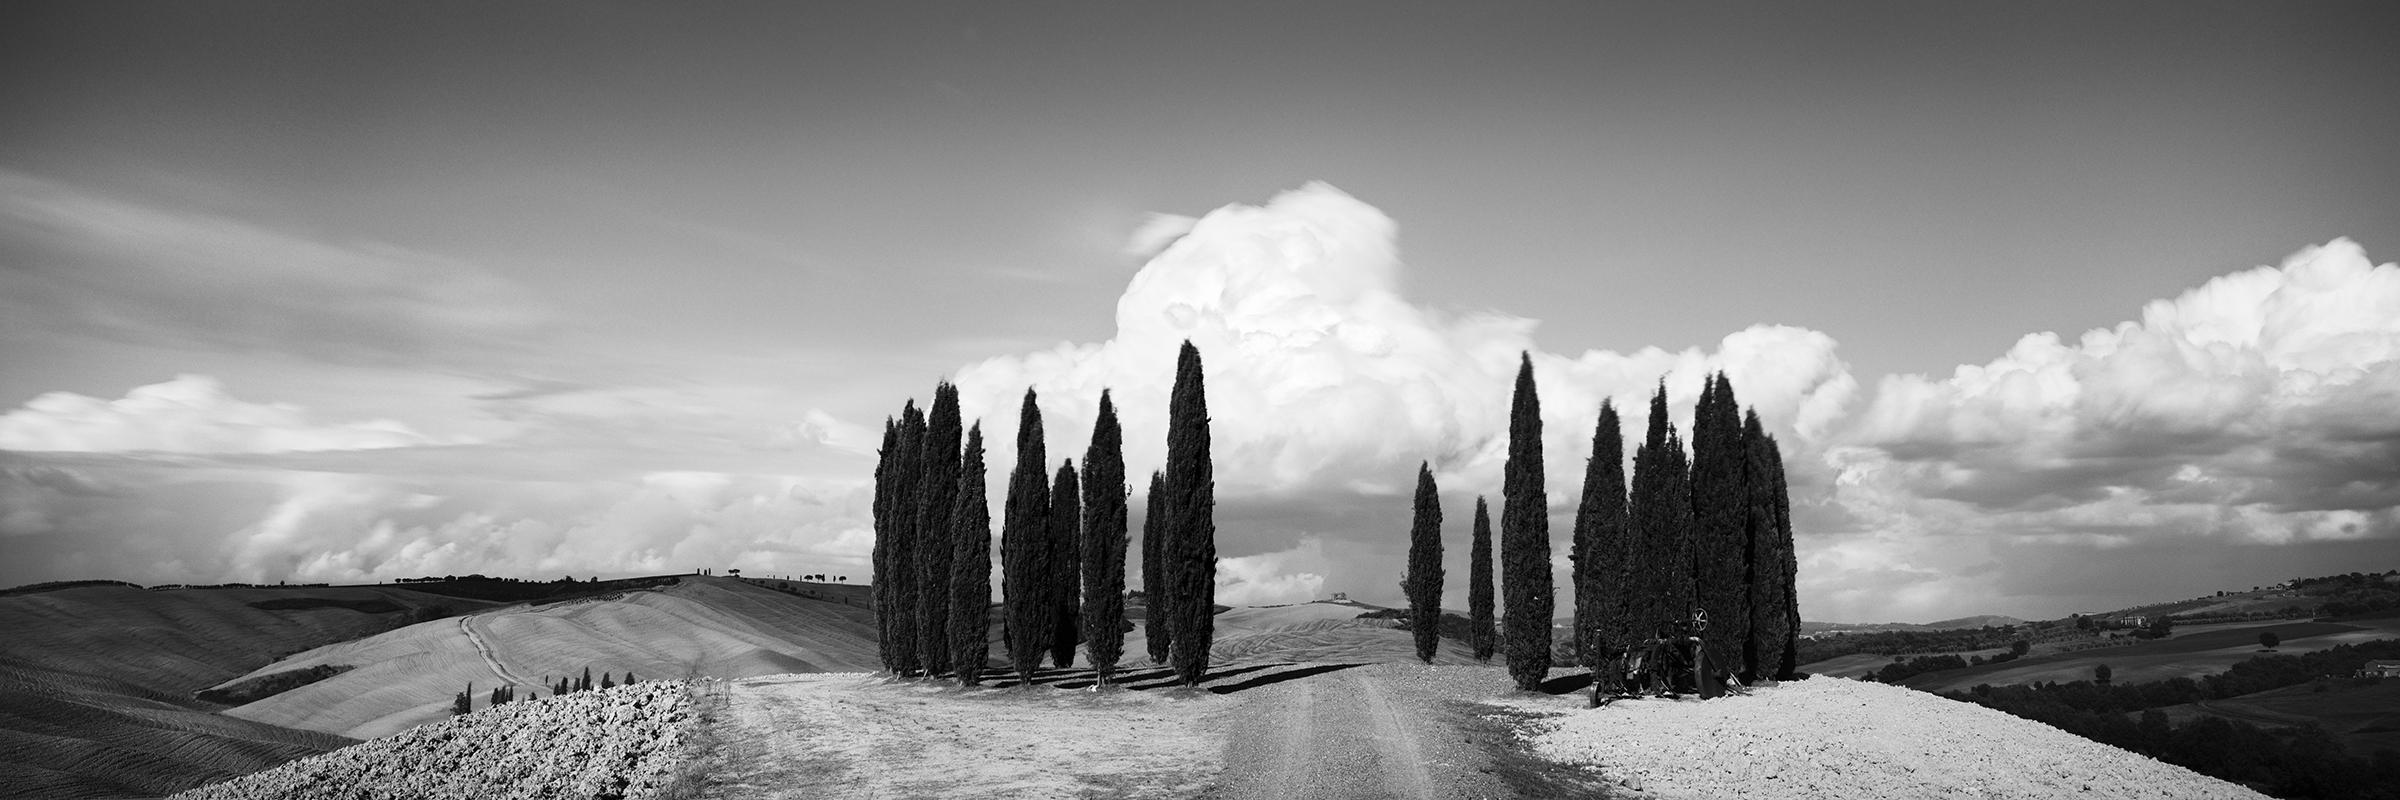 Cercle de cyprès, Toscane, photographie d'art en noir et blanc, paysage